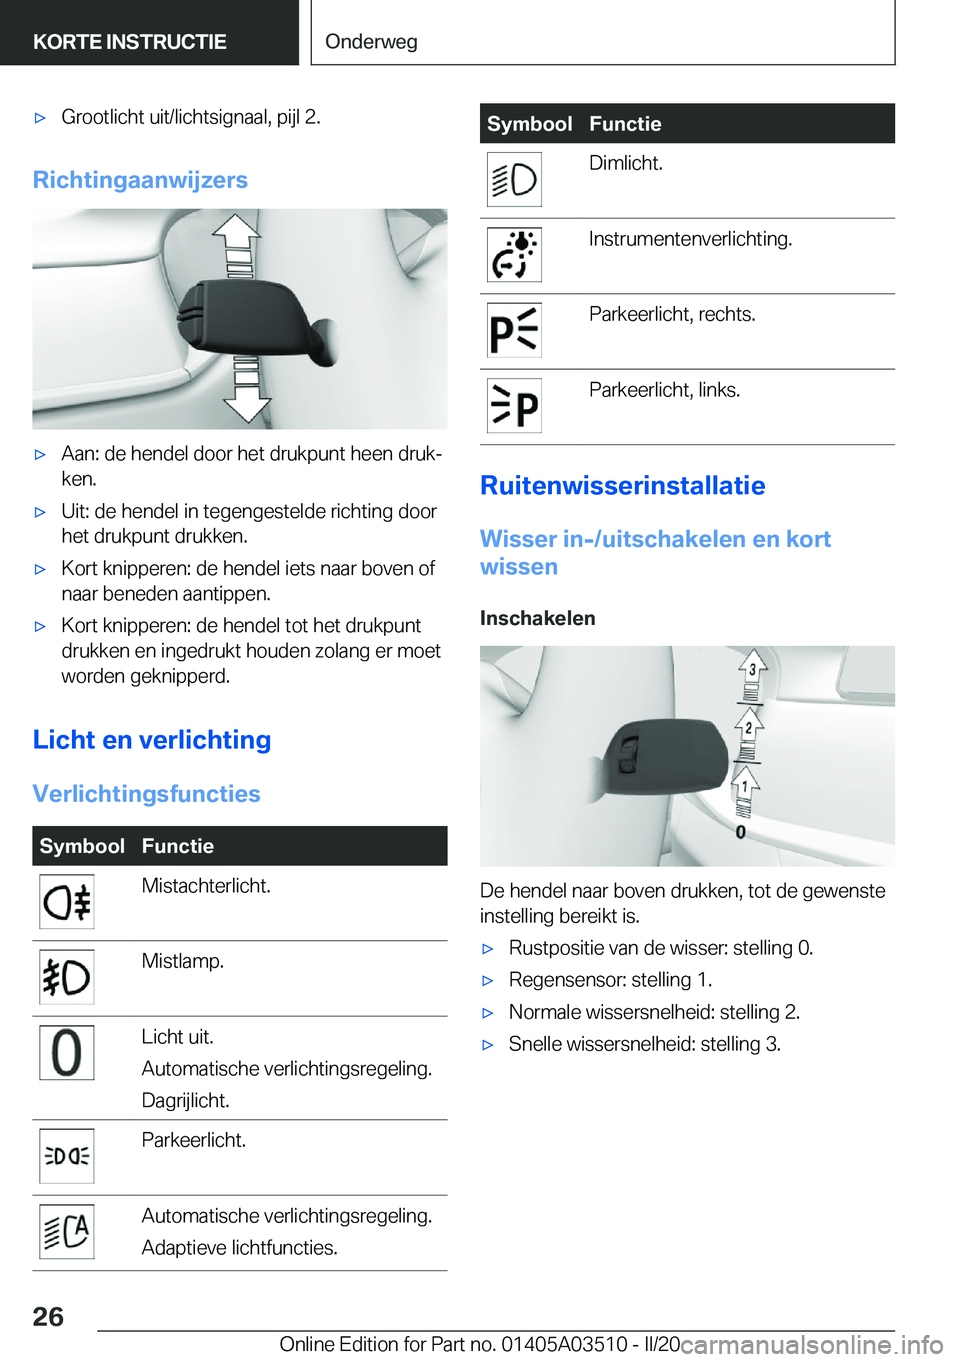 BMW X3 2020  Instructieboekjes (in Dutch) 'x�G�r�o�o�t�l�i�c�h�t��u�i�t�/�l�i�c�h�t�s�i�g�n�a�a�l�,��p�i�j�l��2�.
�R�i�c�h�t�i�n�g�a�a�n�w�i�j�z�e�r�s
'x�A�a�n�:��d�e��h�e�n�d�e�l��d�o�o�r��h�e�t��d�r�u�k�p�u�n�t��h�e�e�n��d